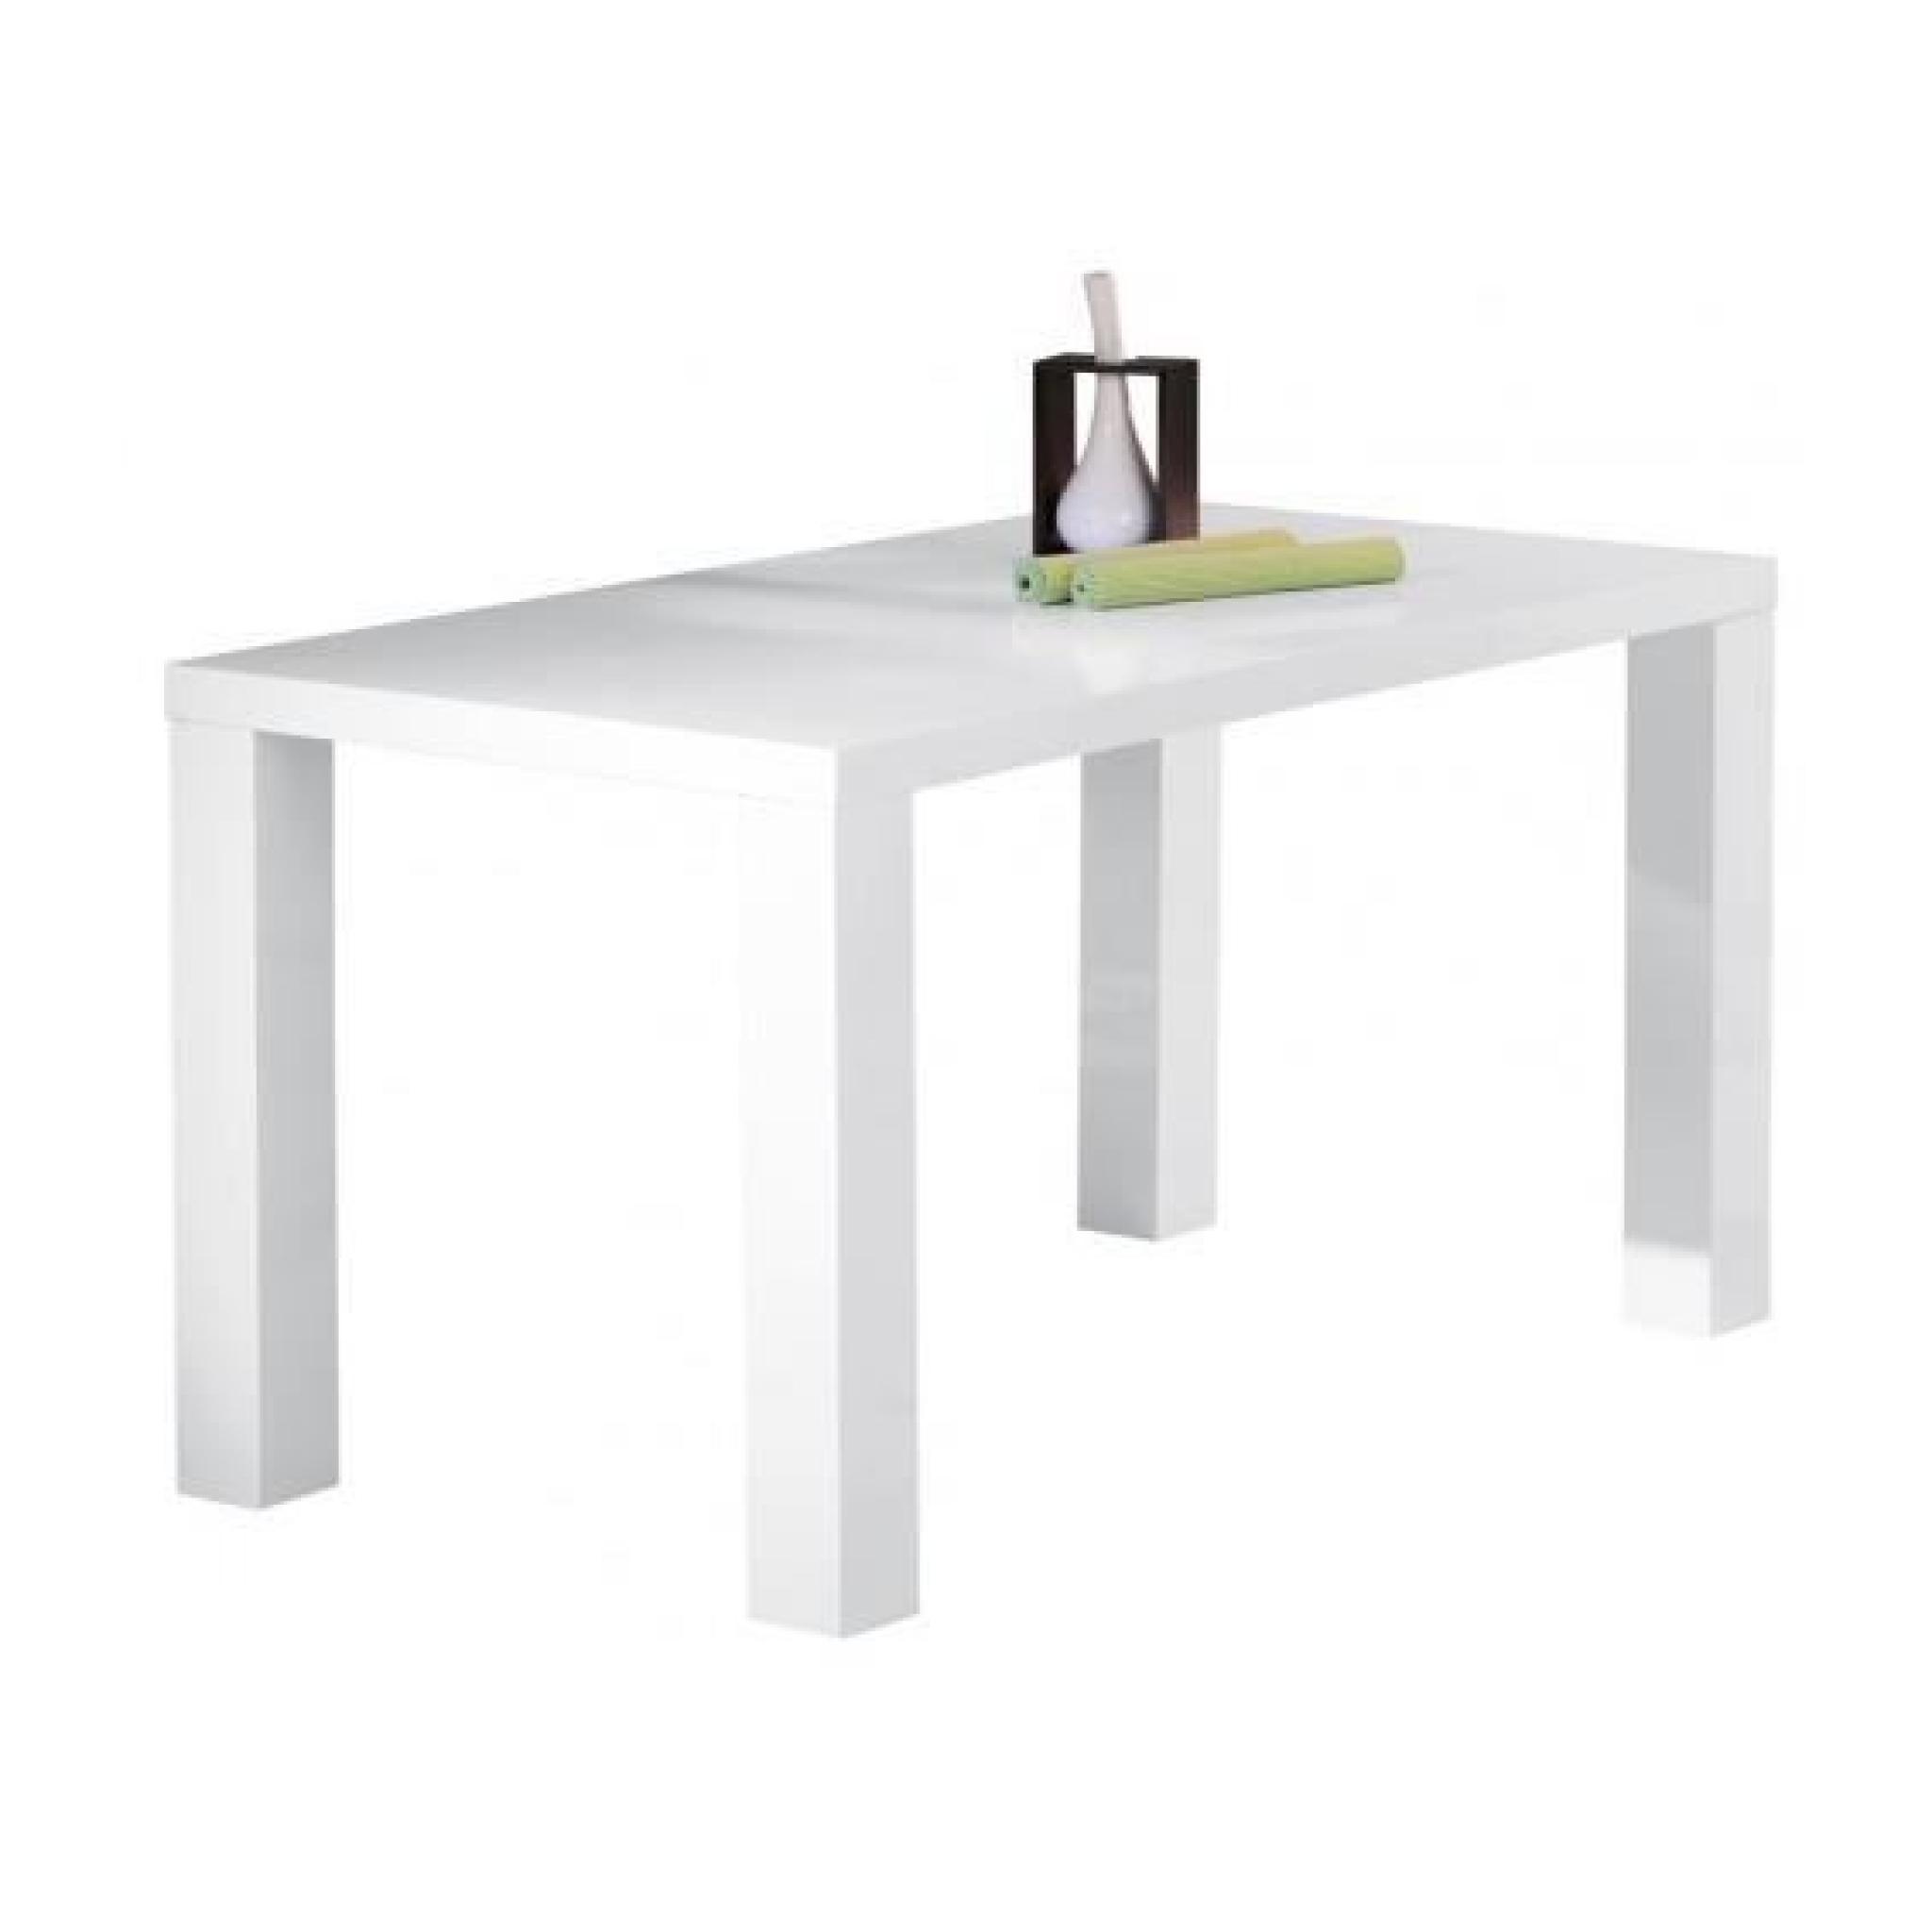 Verdi - Table rectangulaire